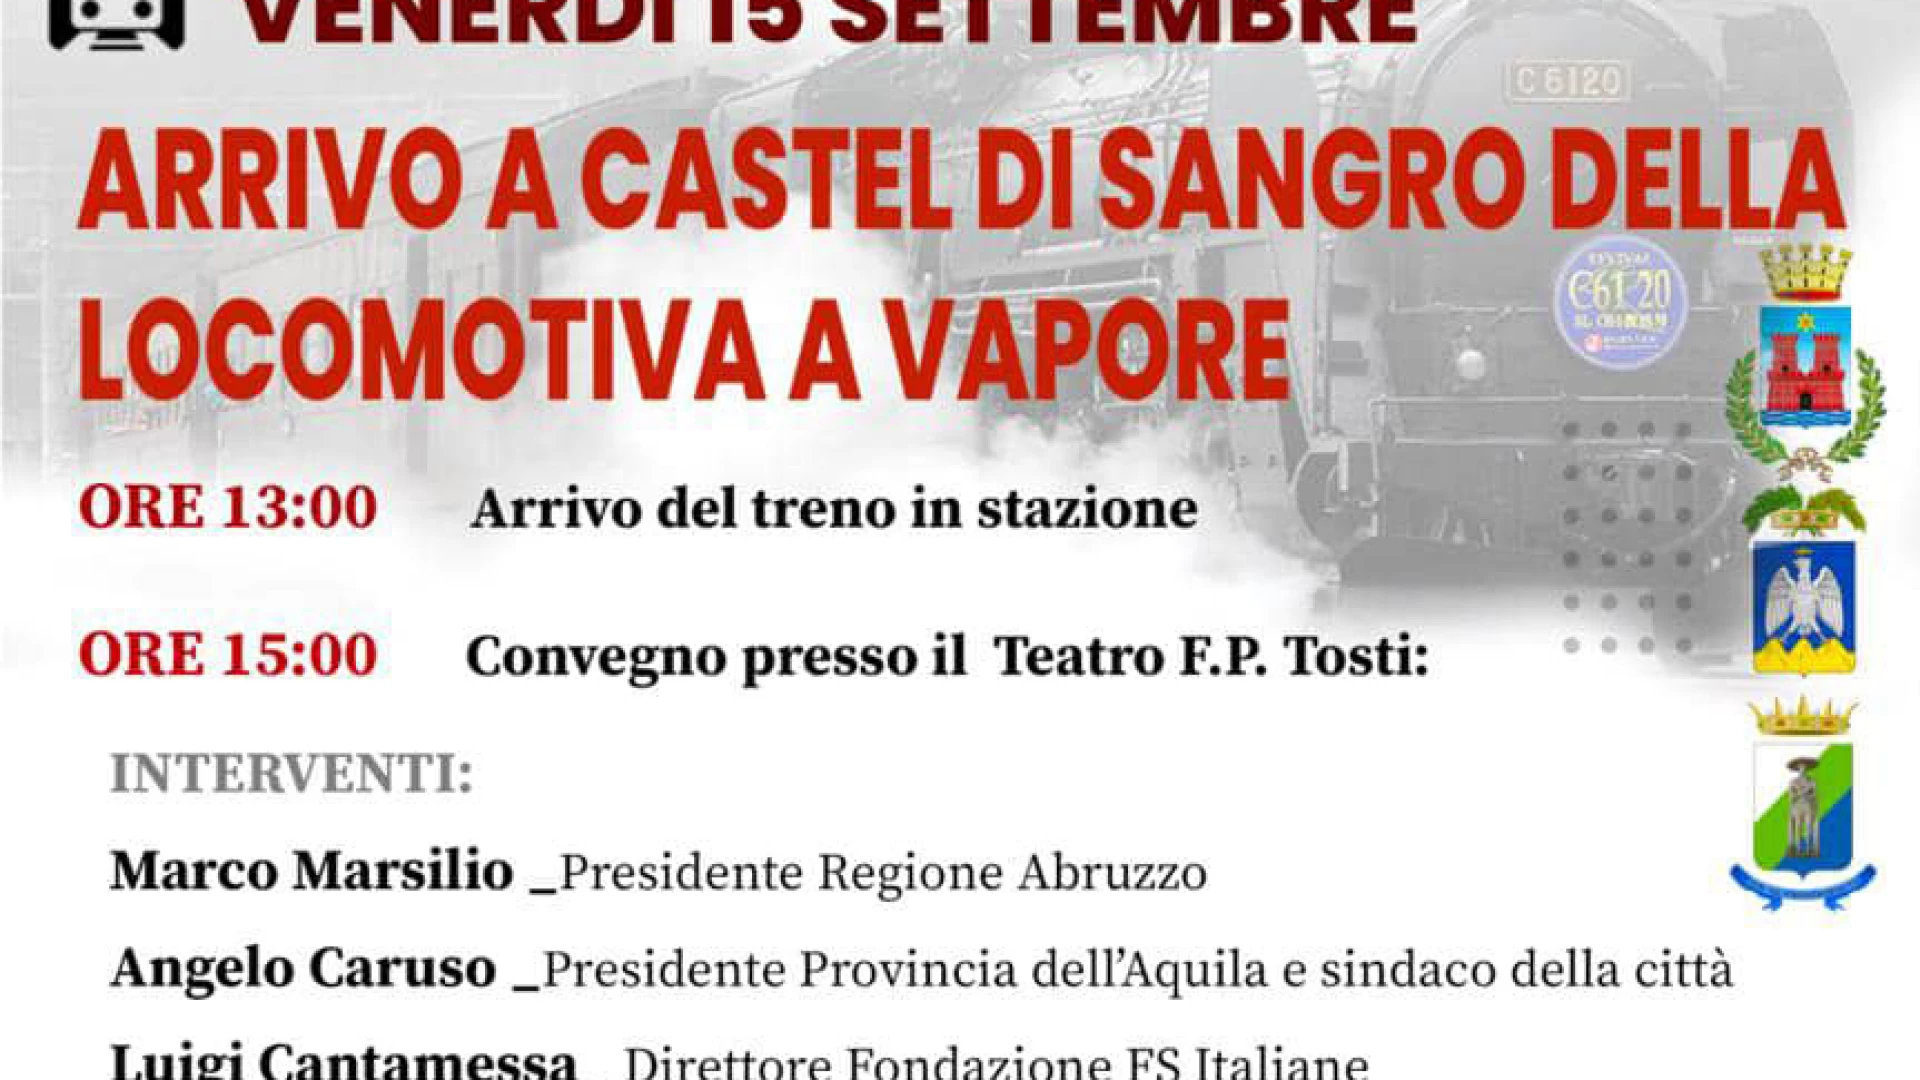 Il treno a vapore arriva a Castel DI Sangro. Venerdì 15 settembre l’evento dedicato all’arrivo della locomotiva.